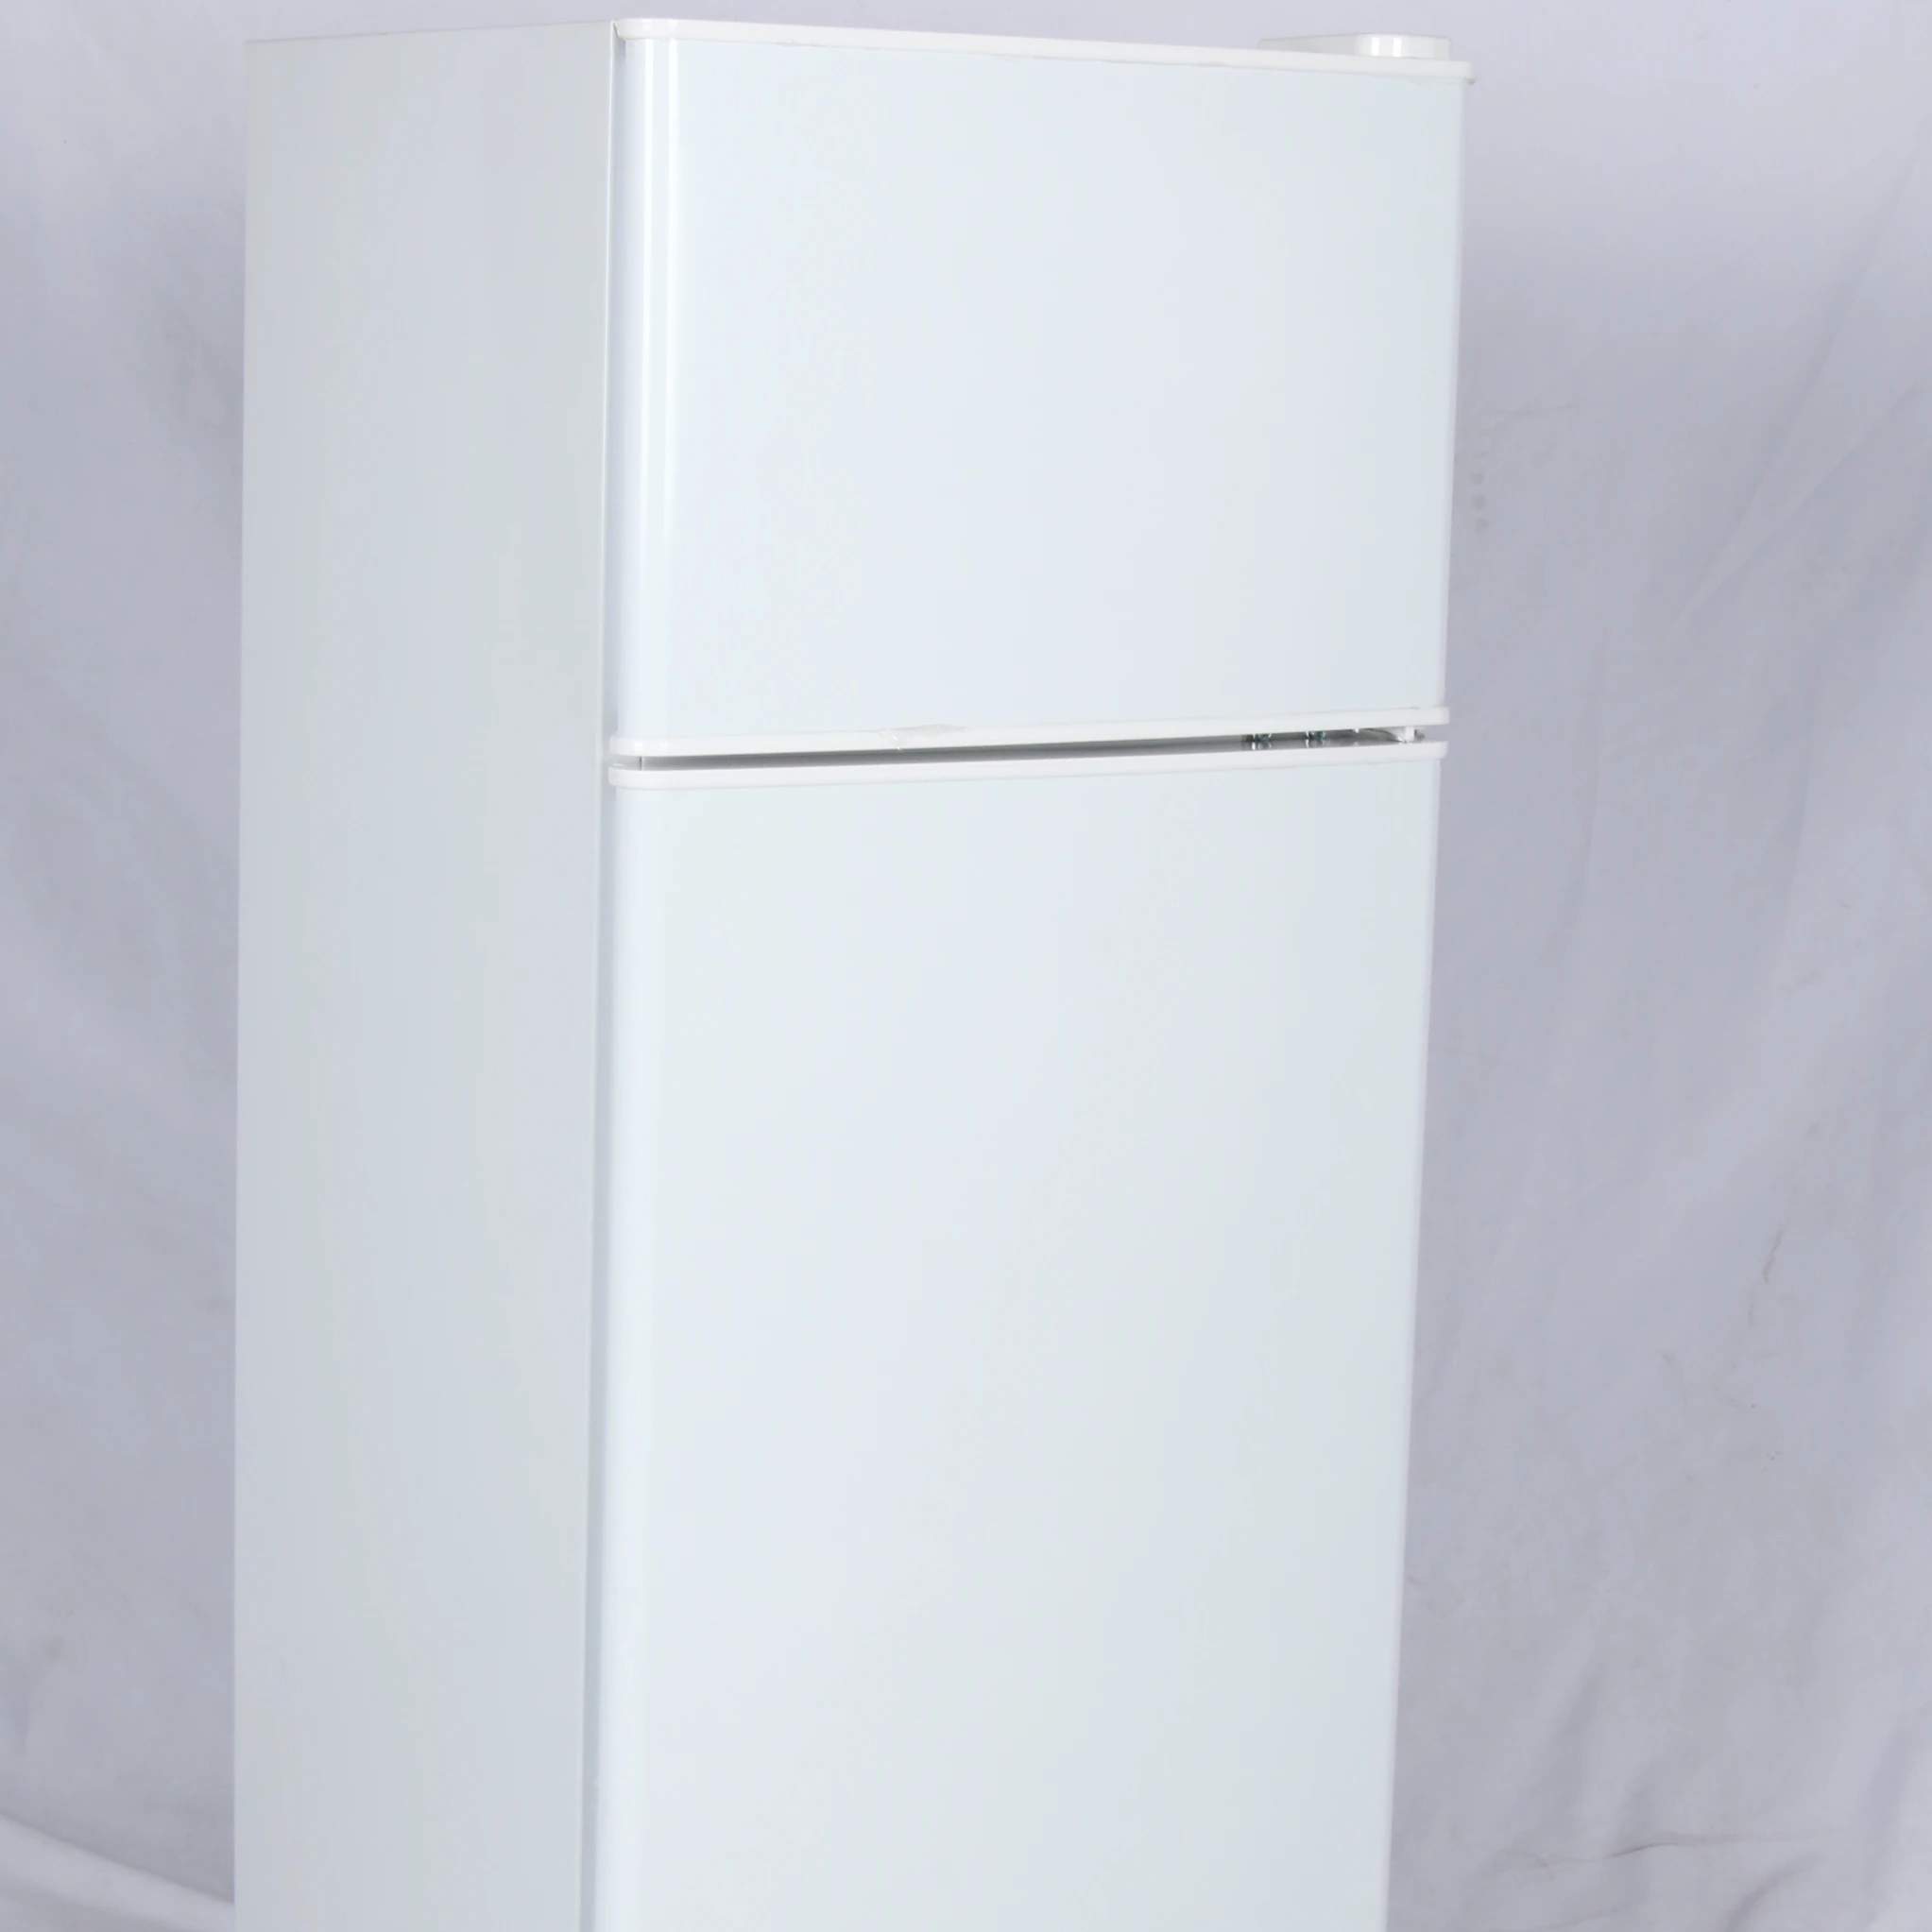 OEM Double Door Top Freezer Refrigerators Manufacturer